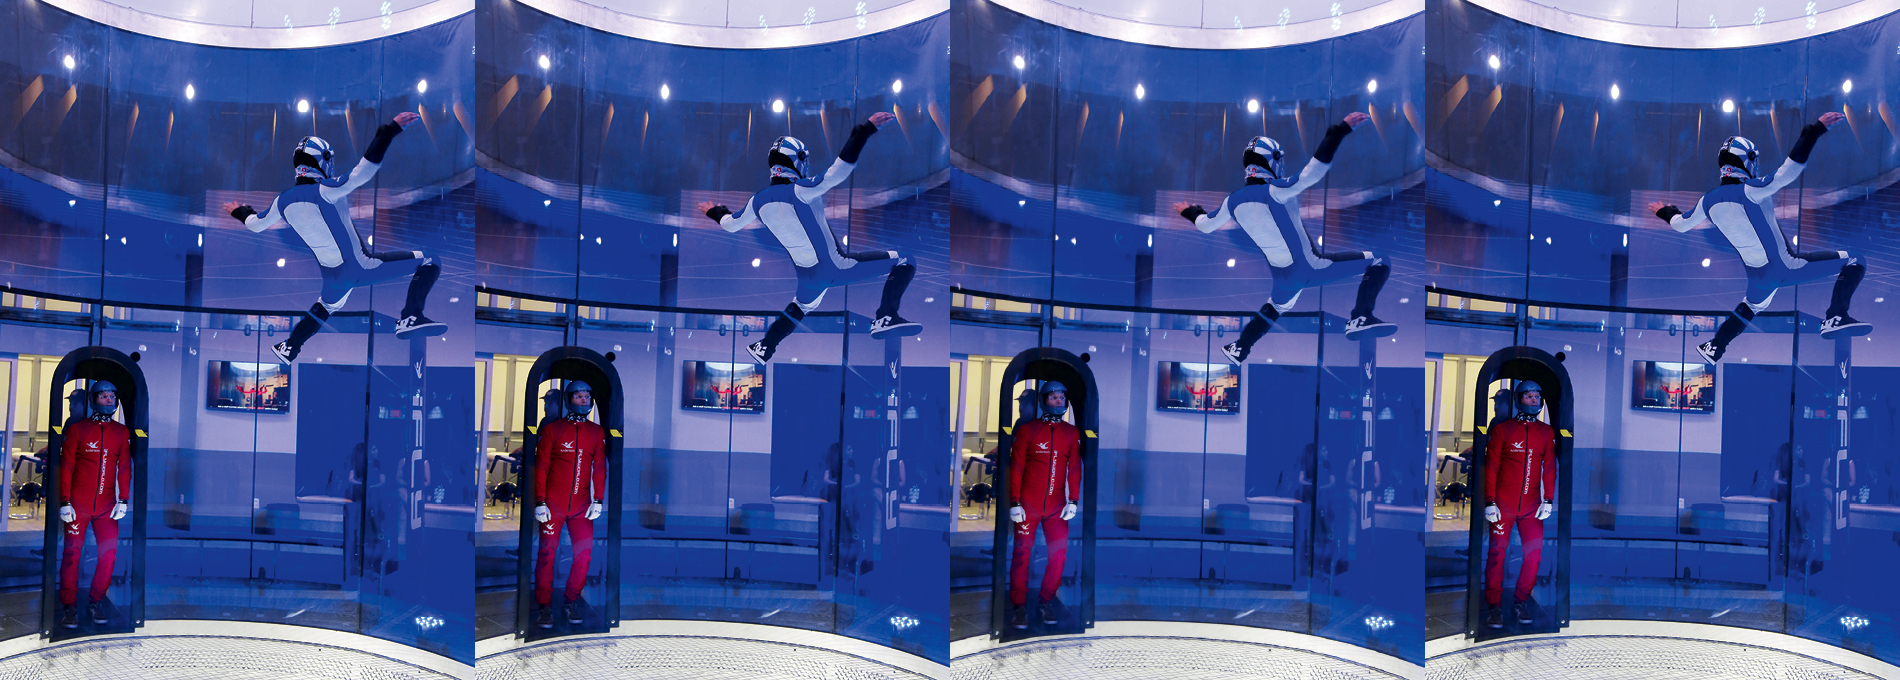 iFLY, simulador de paraquedismo indoor